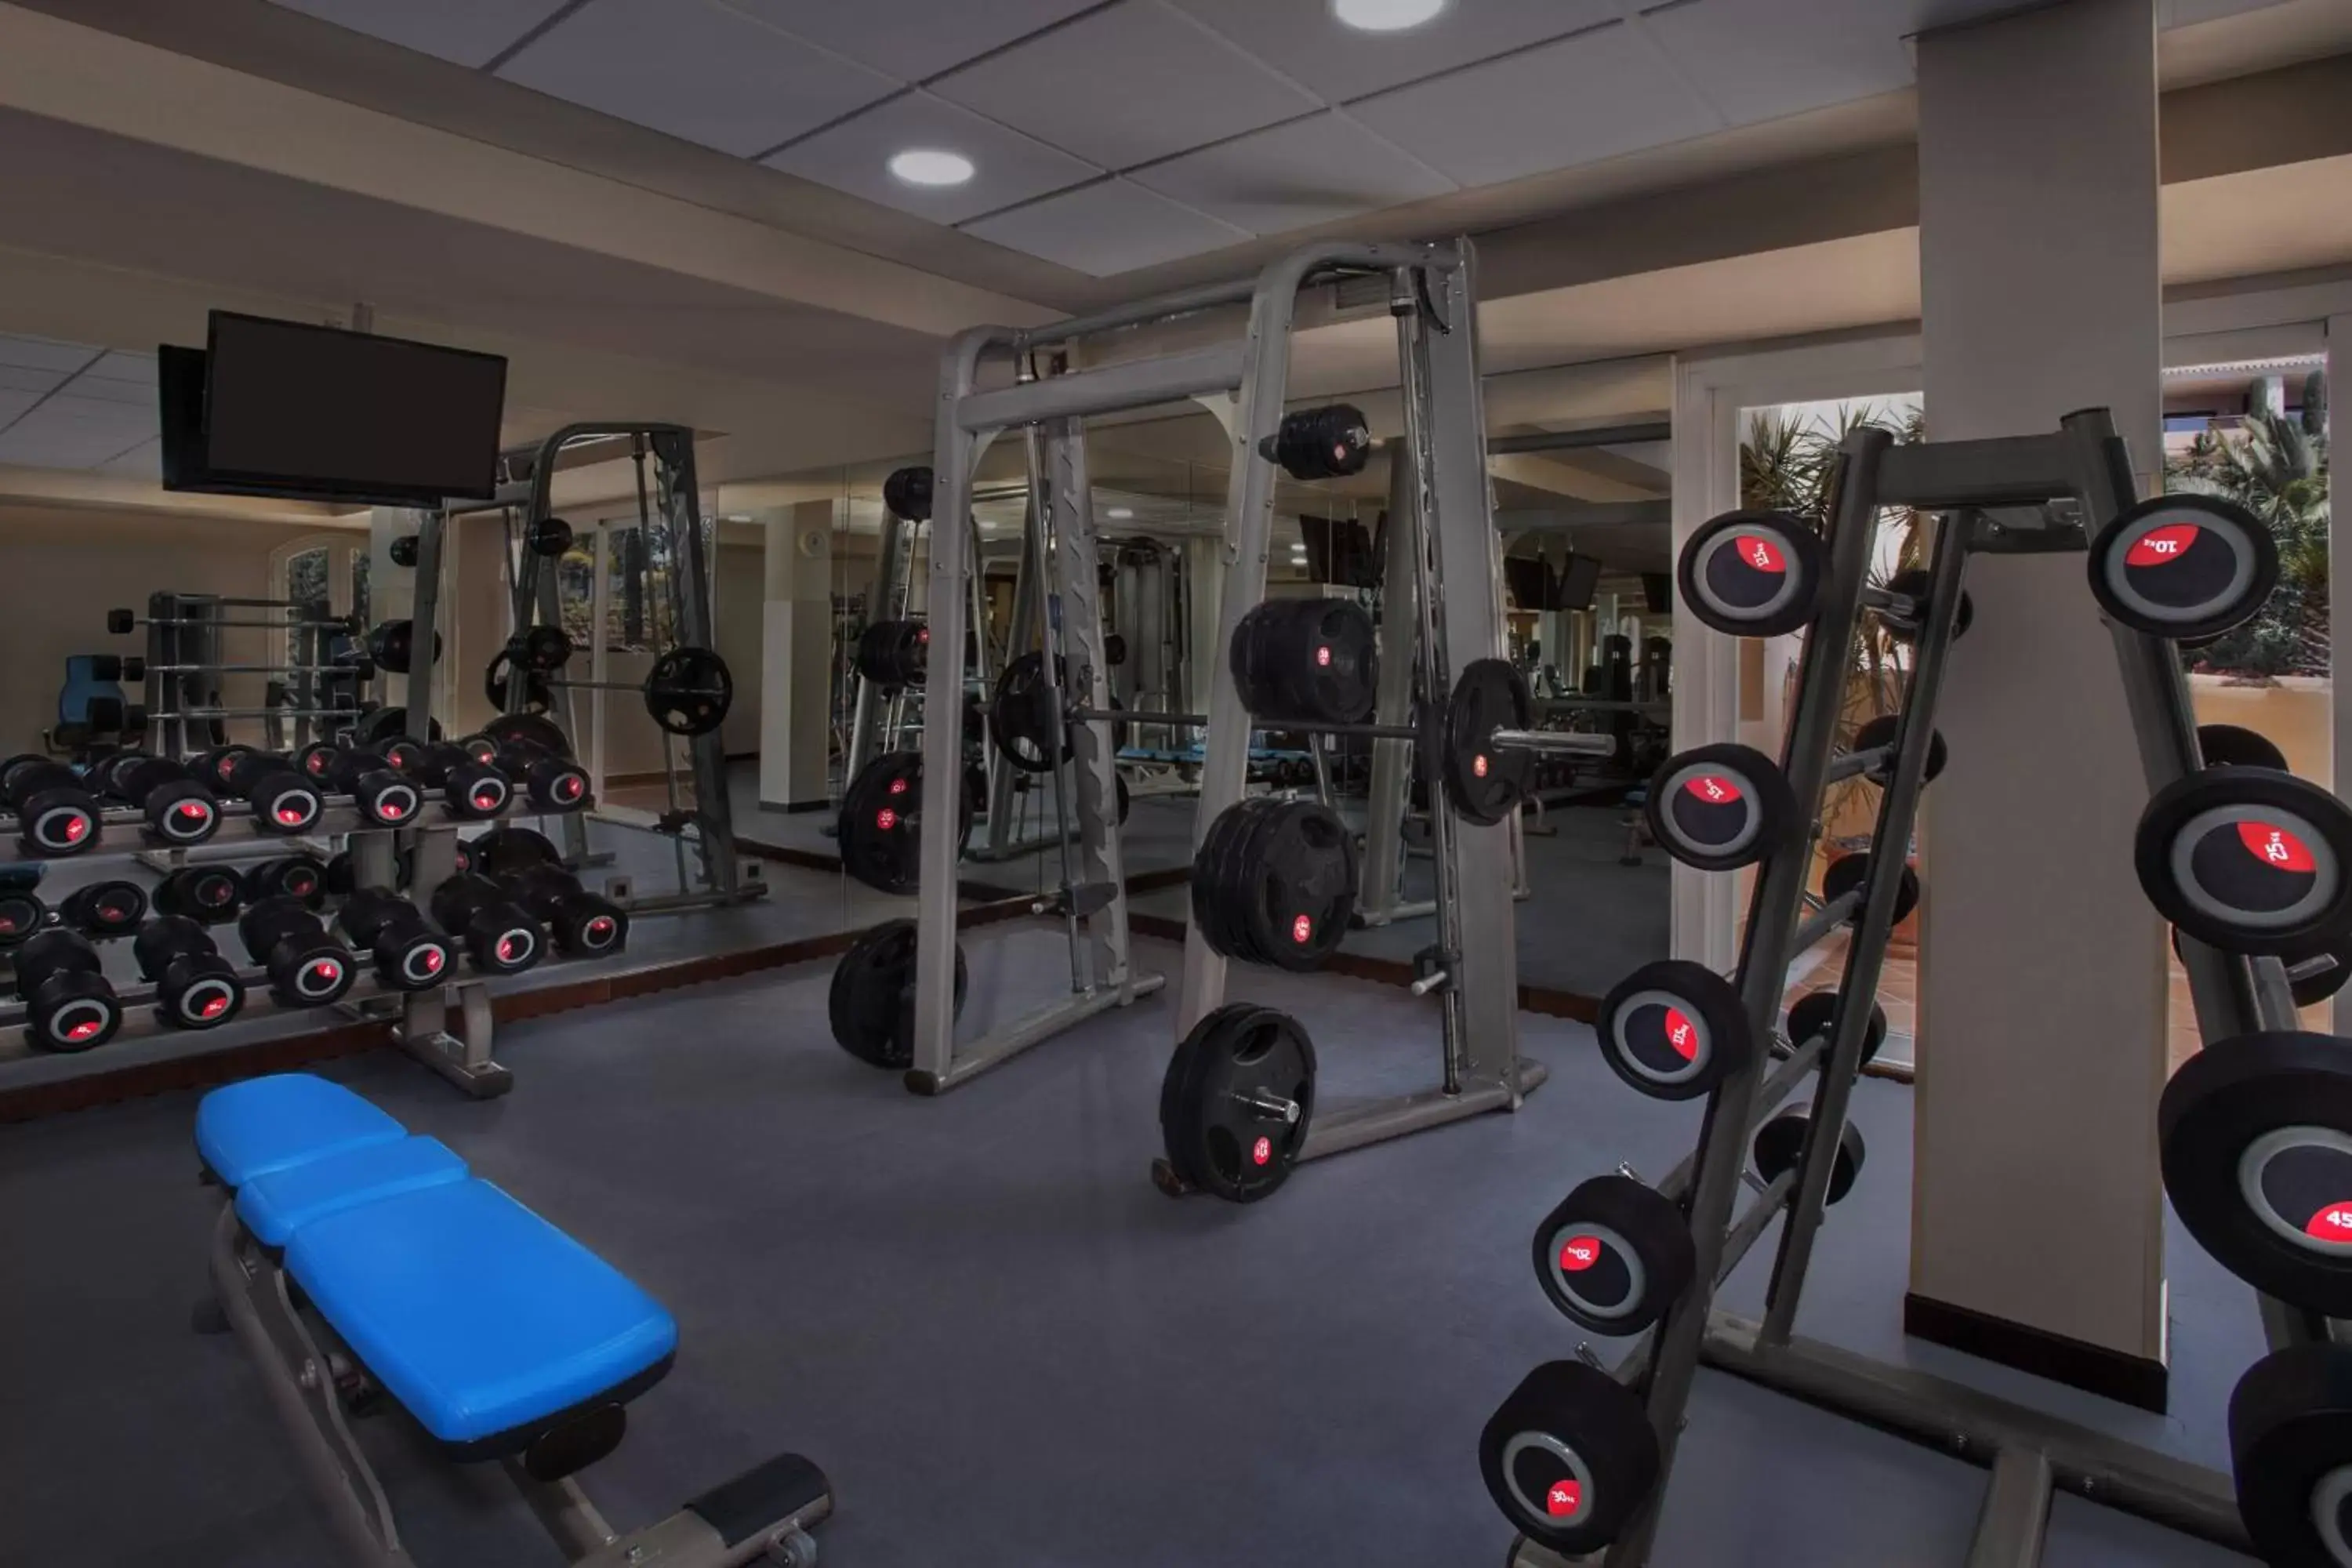 Fitness centre/facilities, Fitness Center/Facilities in Marriott's Marbella Beach Resort